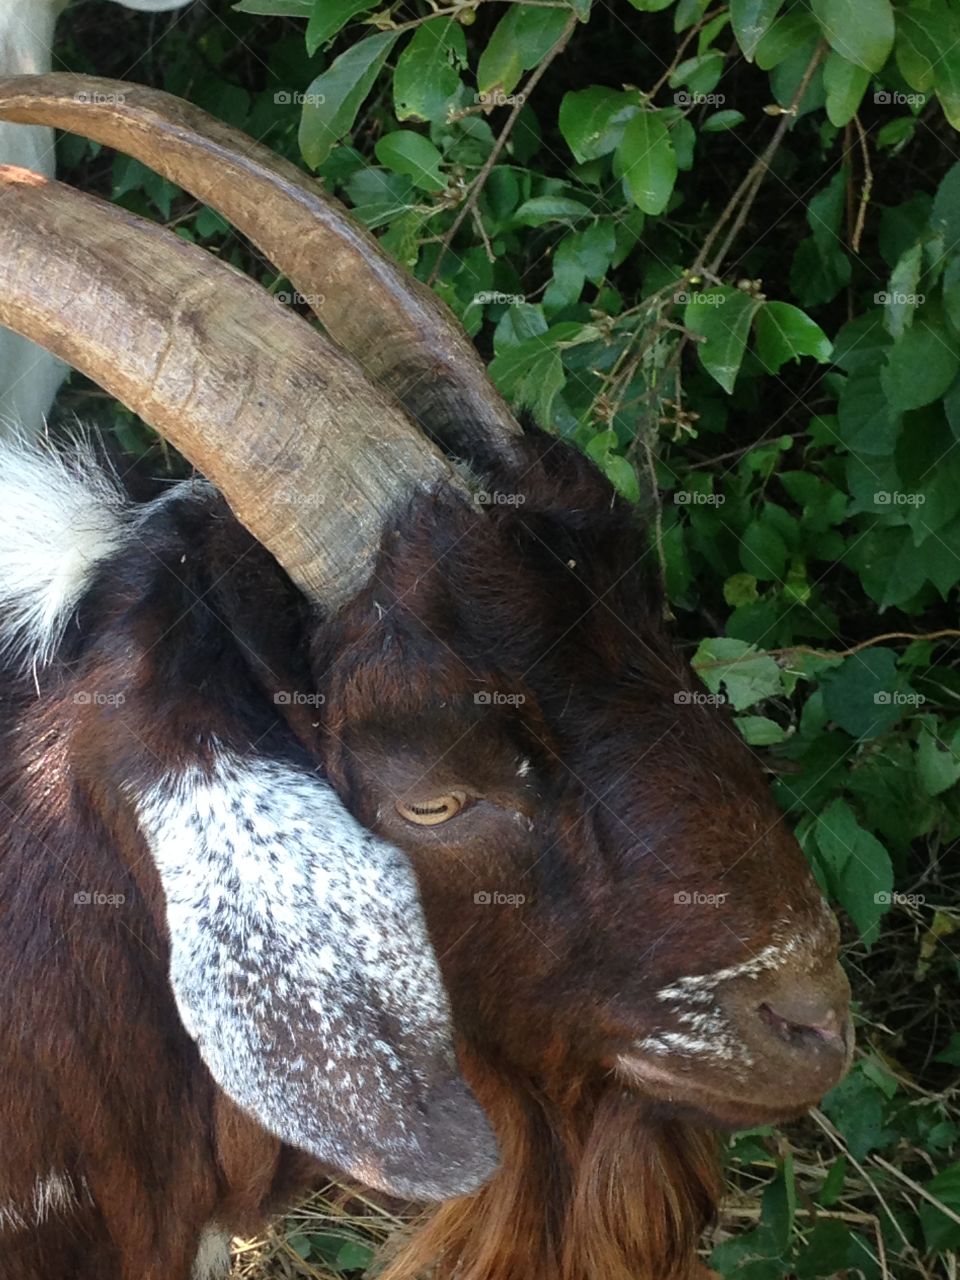 Closeup of a goat